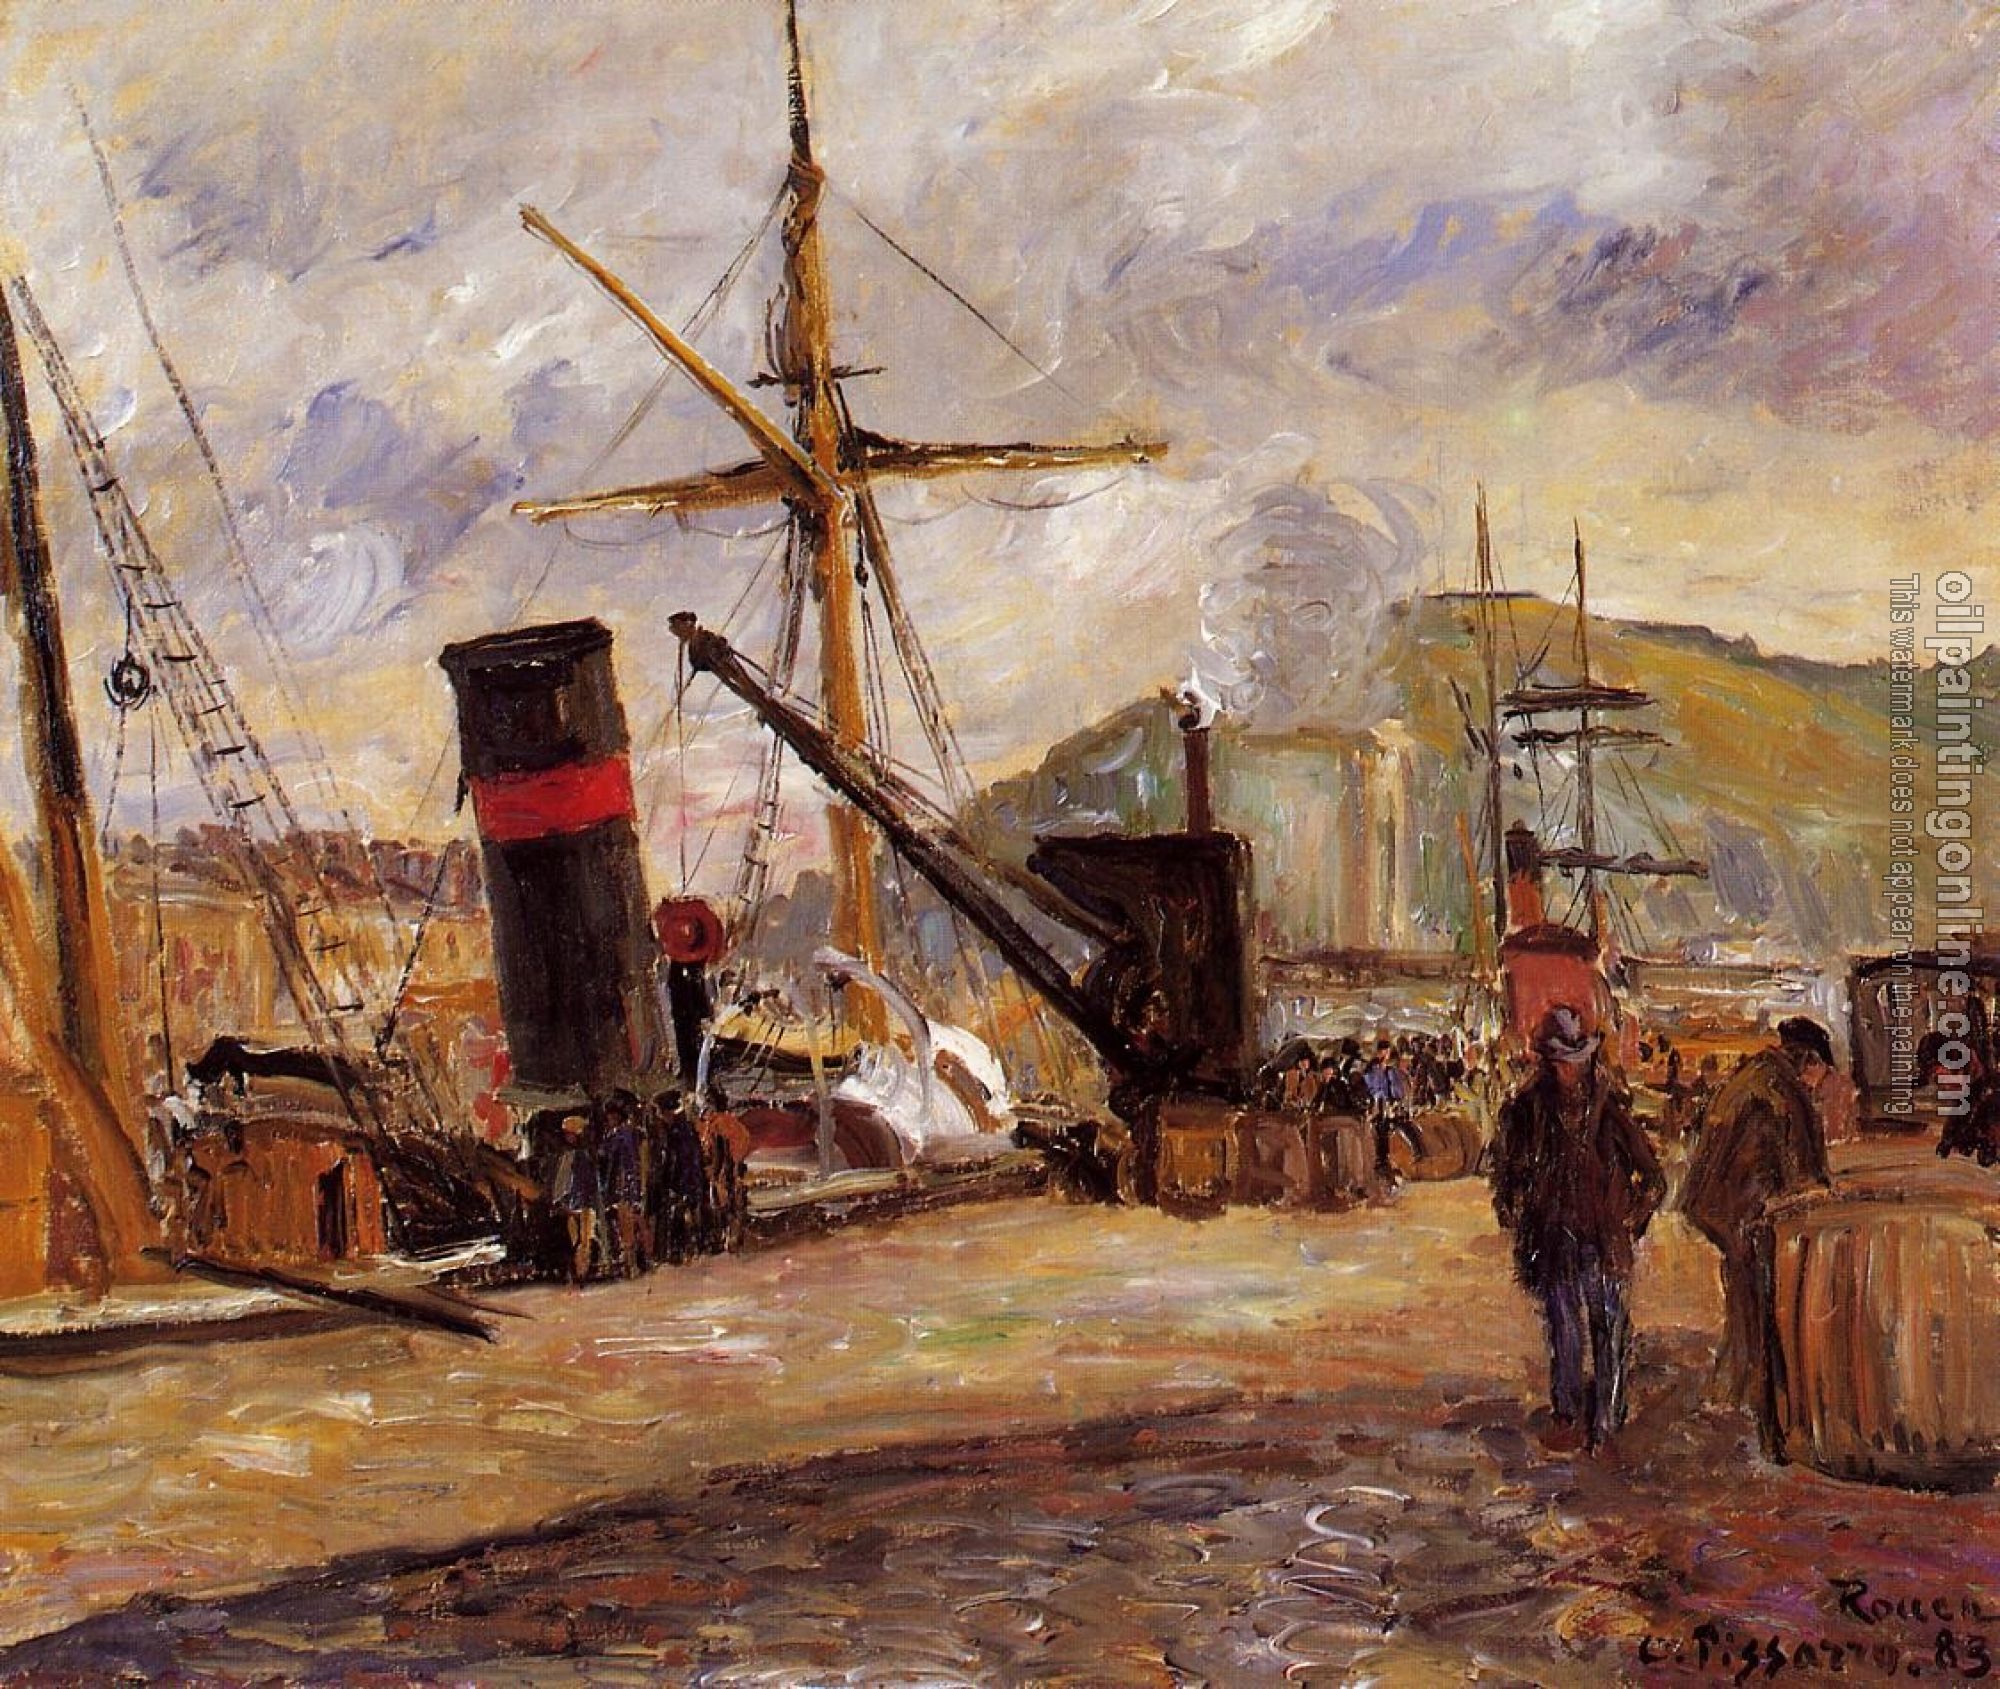 Pissarro, Camille - Steamboats